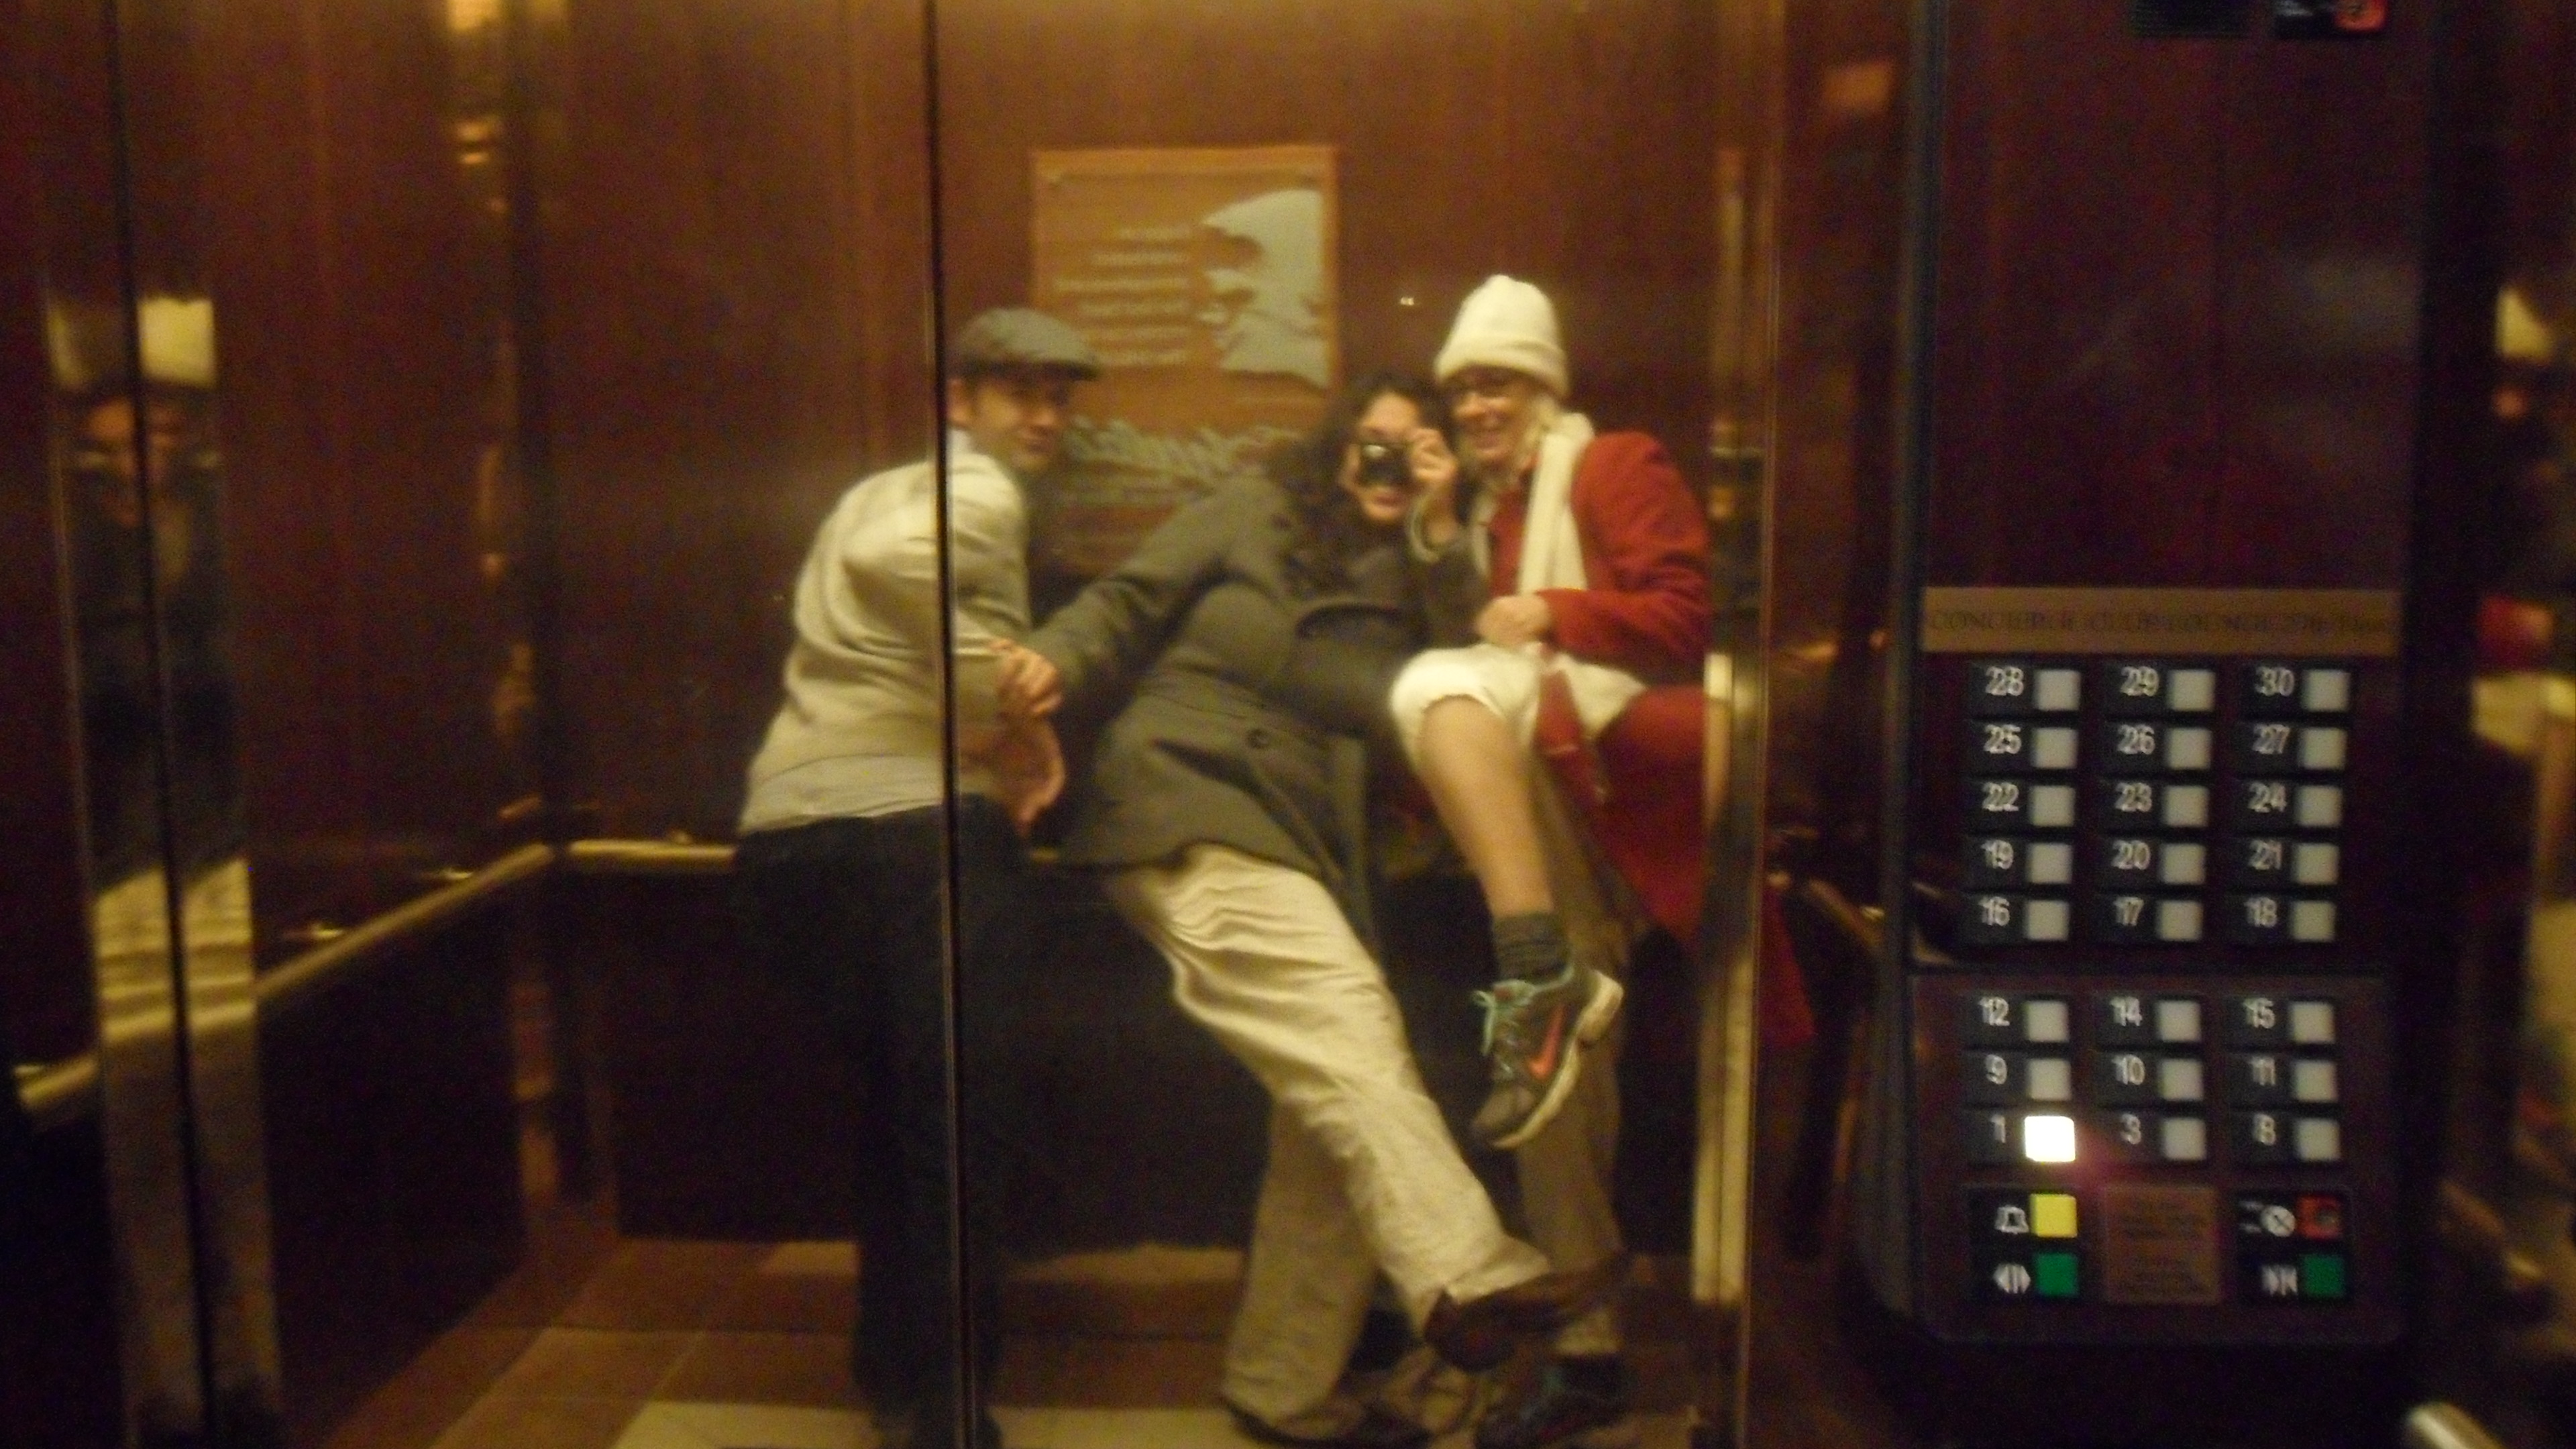 & antics in the elevator...